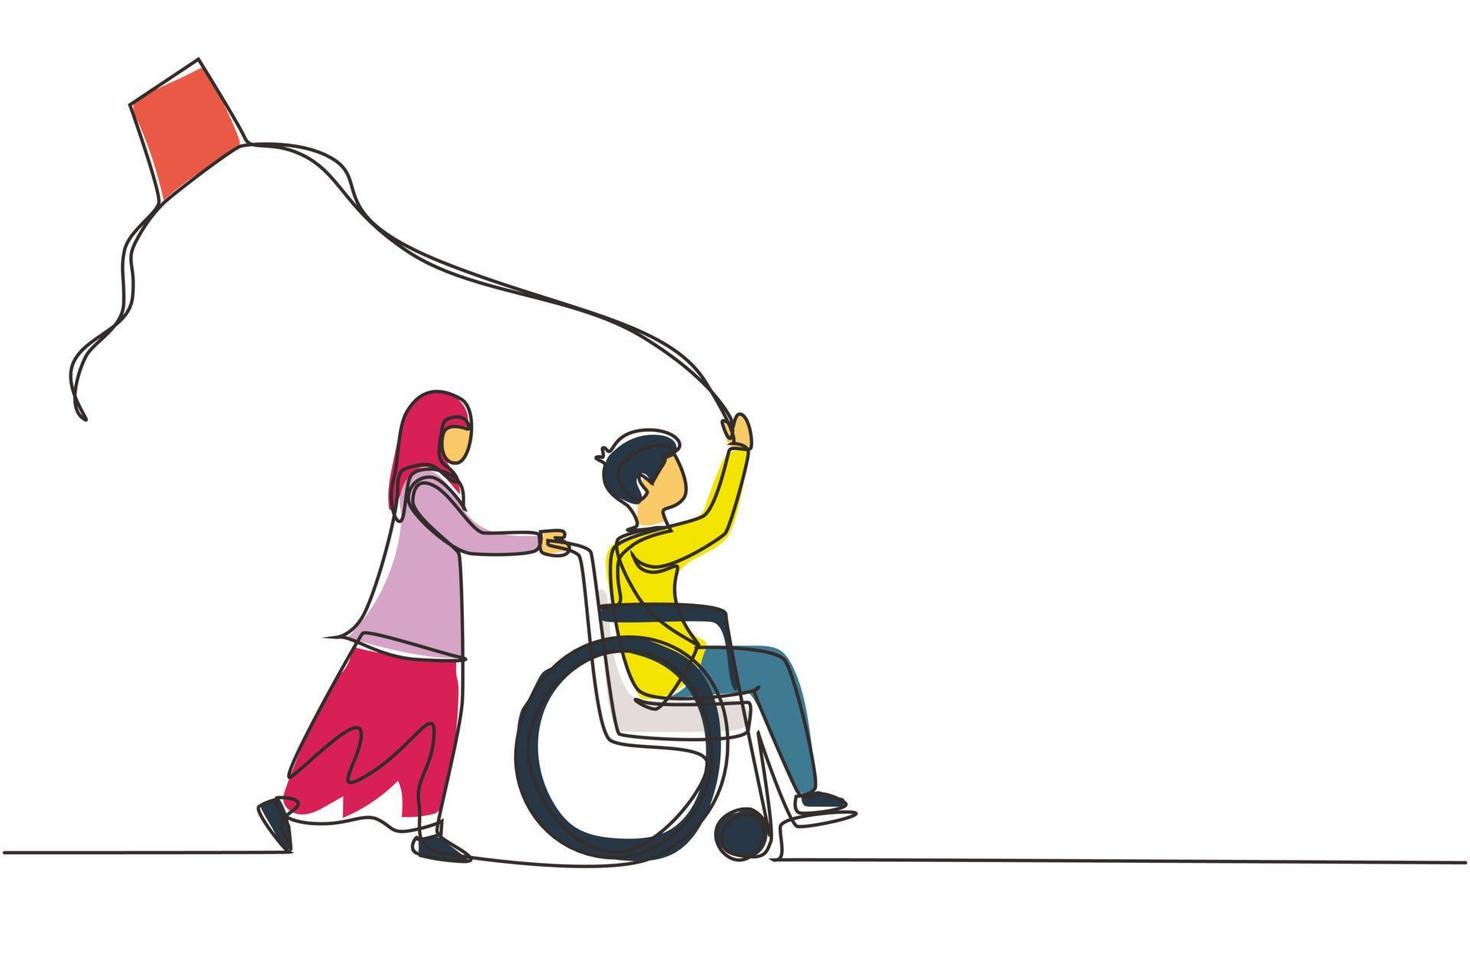 enkele lijntekening gelukkig kind uitgeschakeld concept. hand getekend Arabisch meisje duwen jongen in rolstoel met vliegende vlieger. gehandicapten hebben plezier buiten. doorlopende lijn tekenen ontwerp vectorillustratie vector